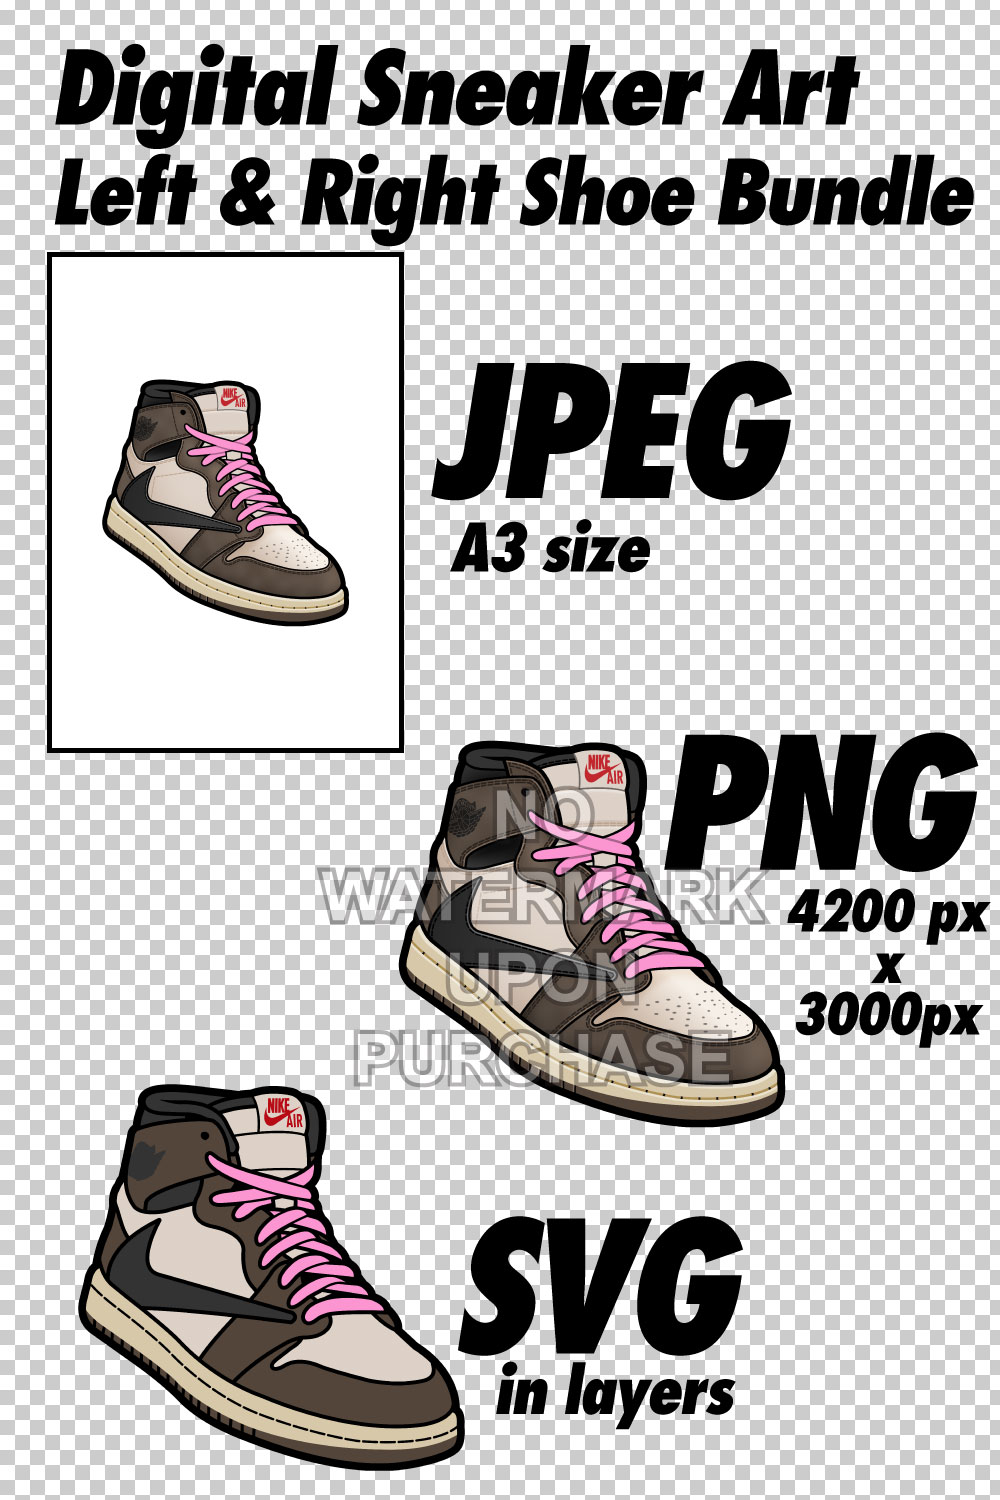 Air Jordan 1 Travis Scott JPEG PNG SVG right & left shoe bundle pinterest preview image.